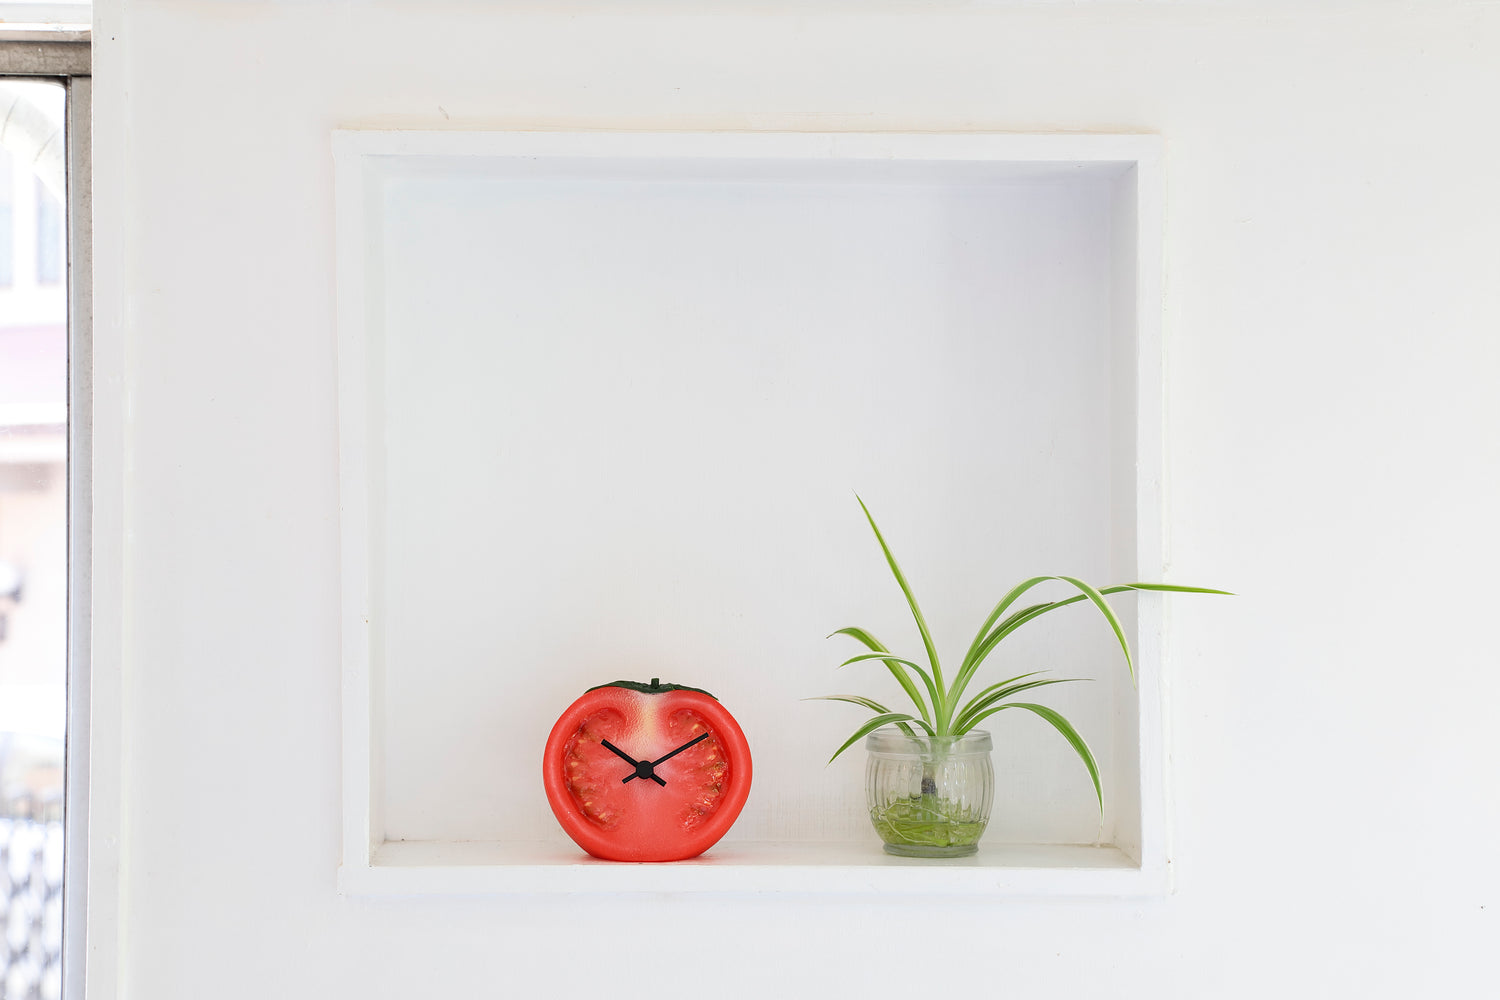 元祖食品サンプル屋「Replica Food Clock トマト」の植物の横に置いたイメージ画像です。